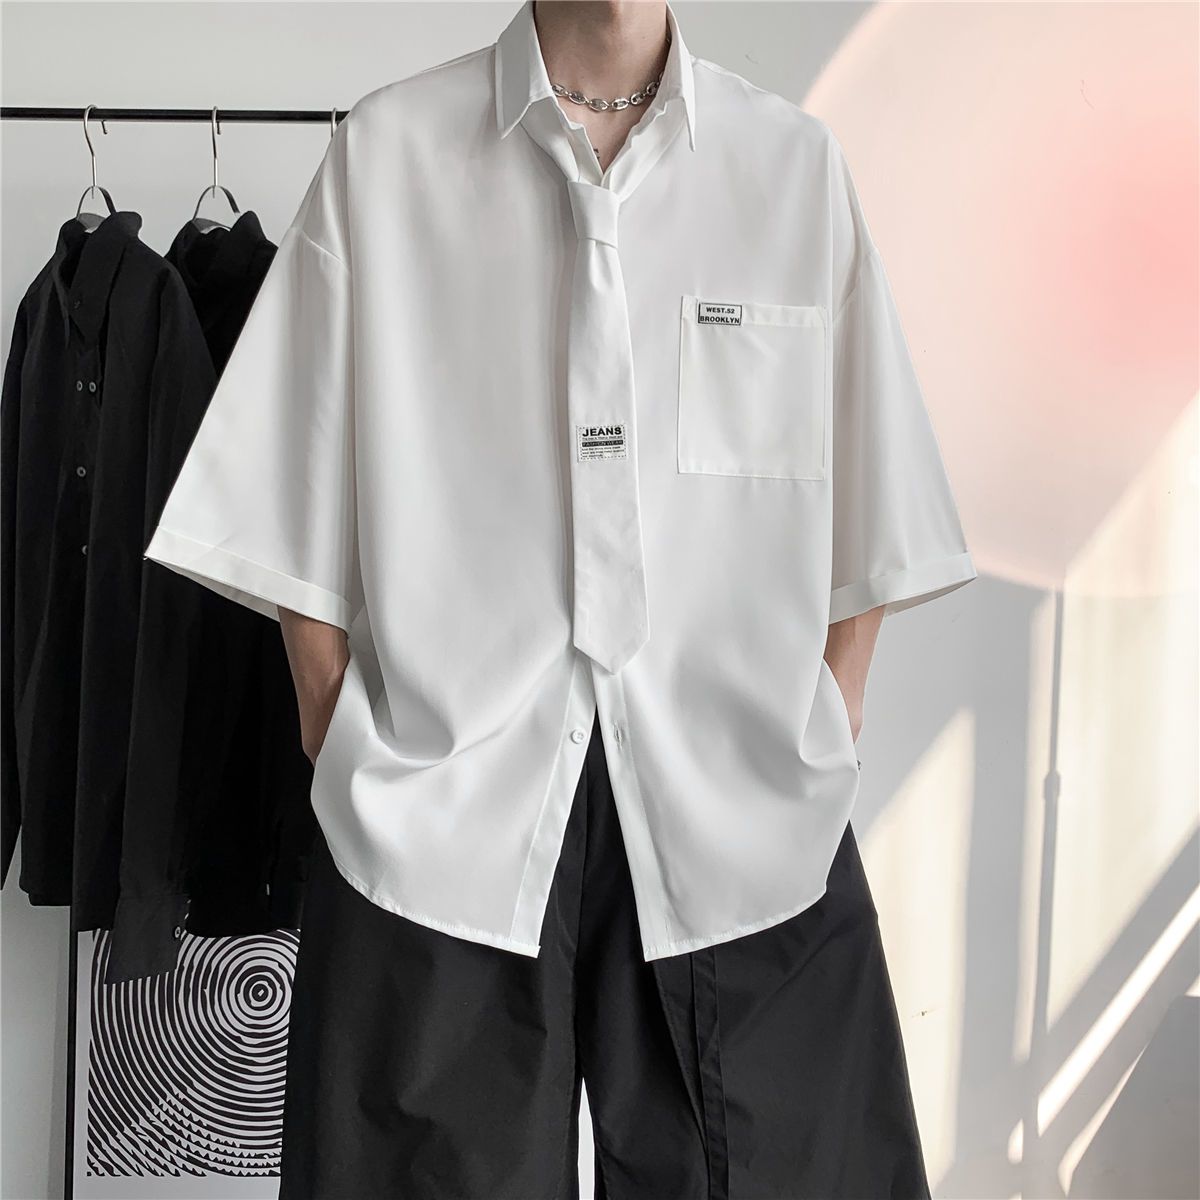 DK college style short-sleeved shirt men's summer design high-end niche shirt chic Hong Kong flavor top loose couple